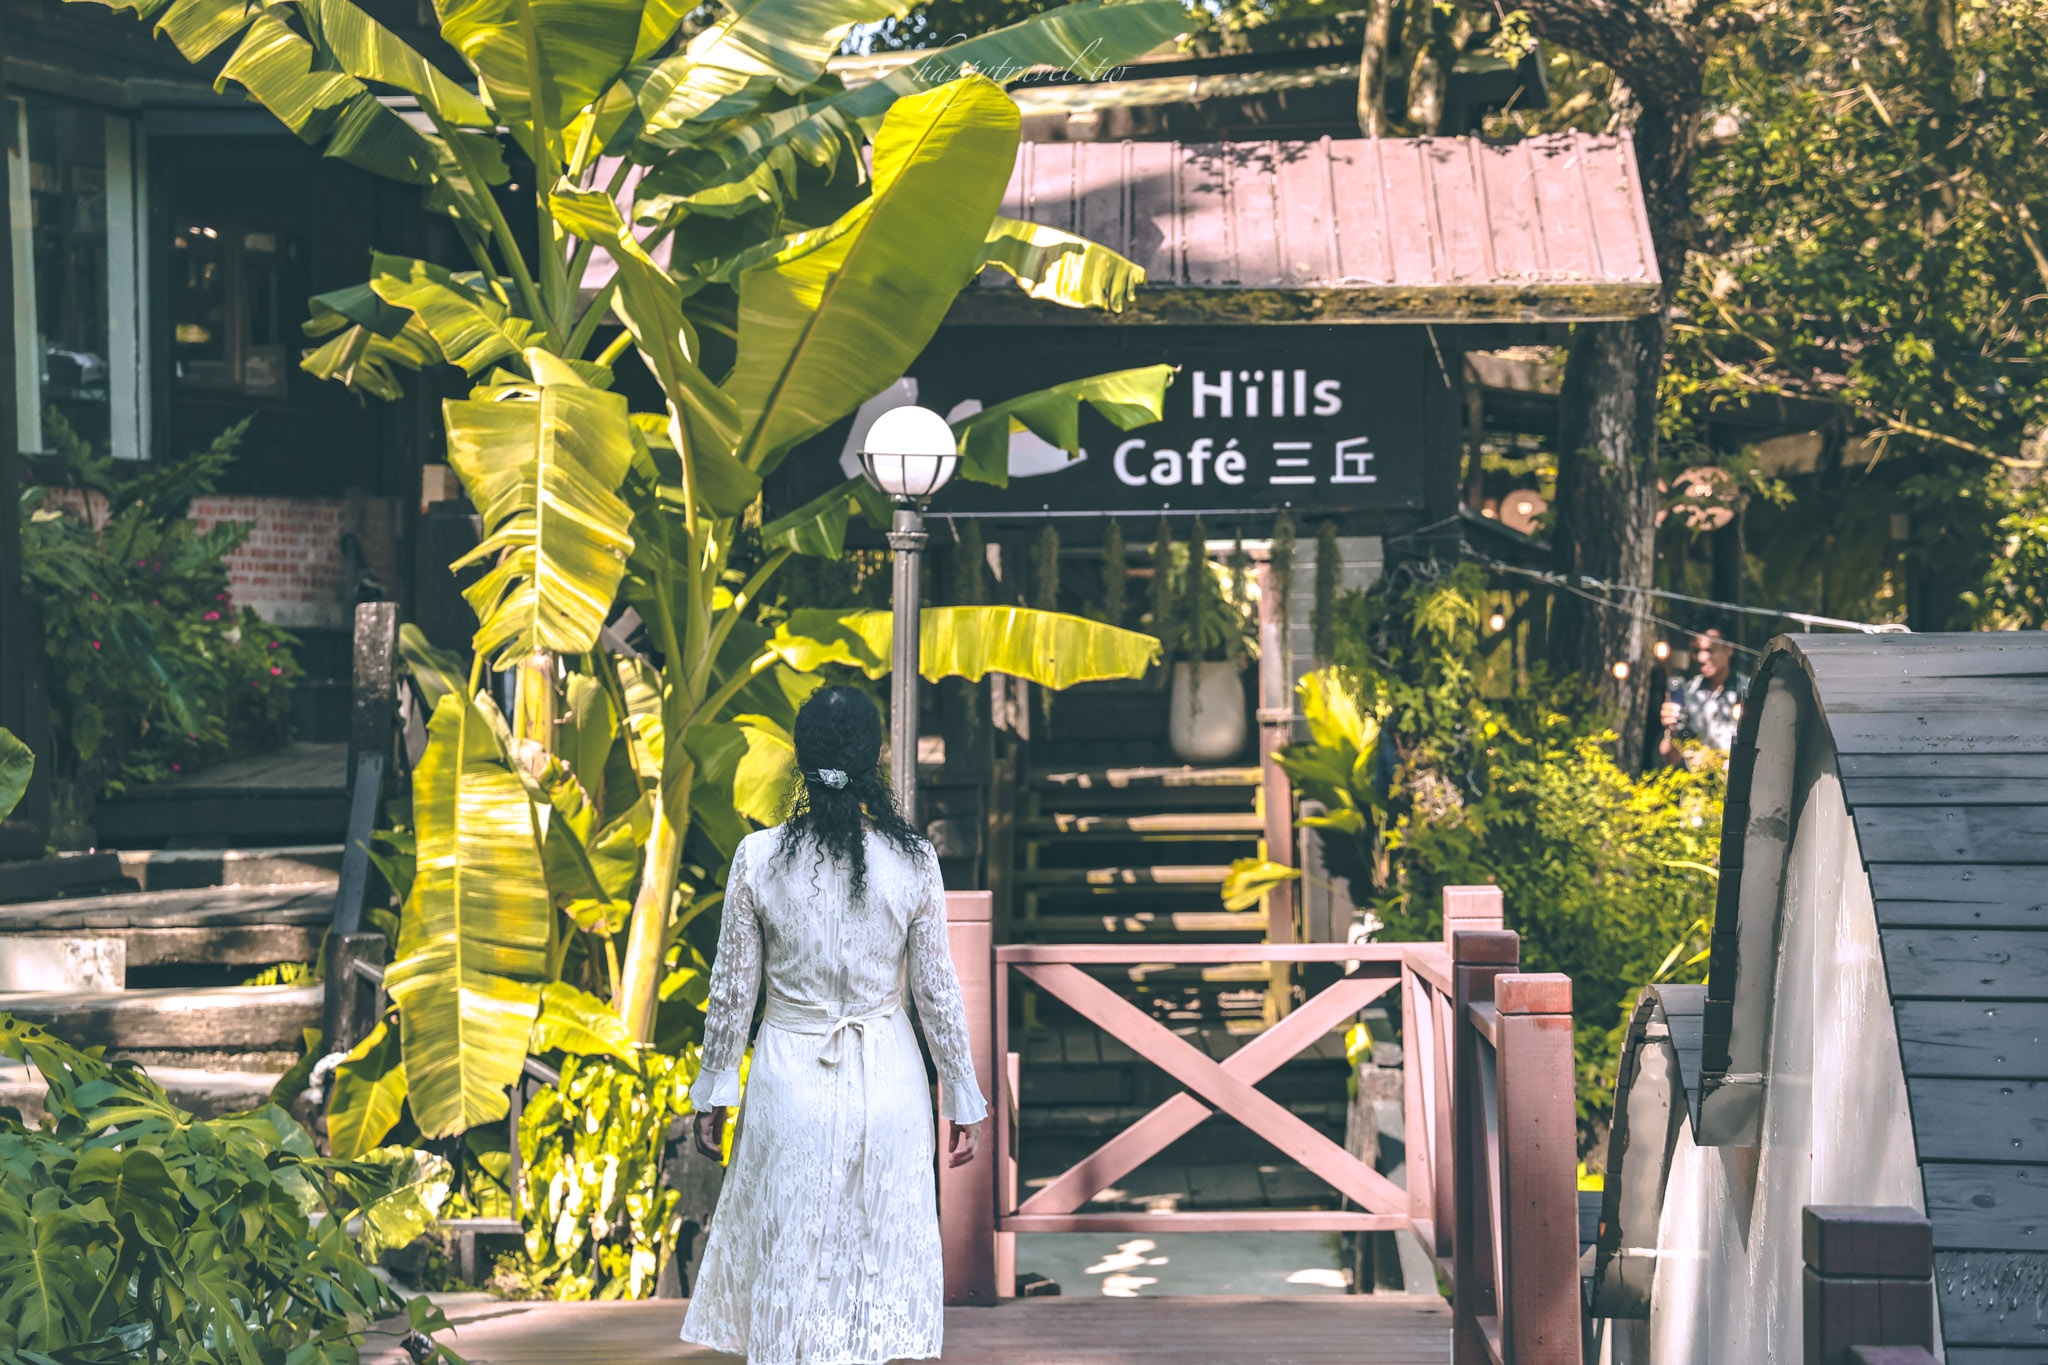 苗栗景點。三丘景觀餐廳 3 Hills café｜隱匿山林間的熱帶雨林風咖啡廳，激推絕美森林系景點，三義咖啡廳